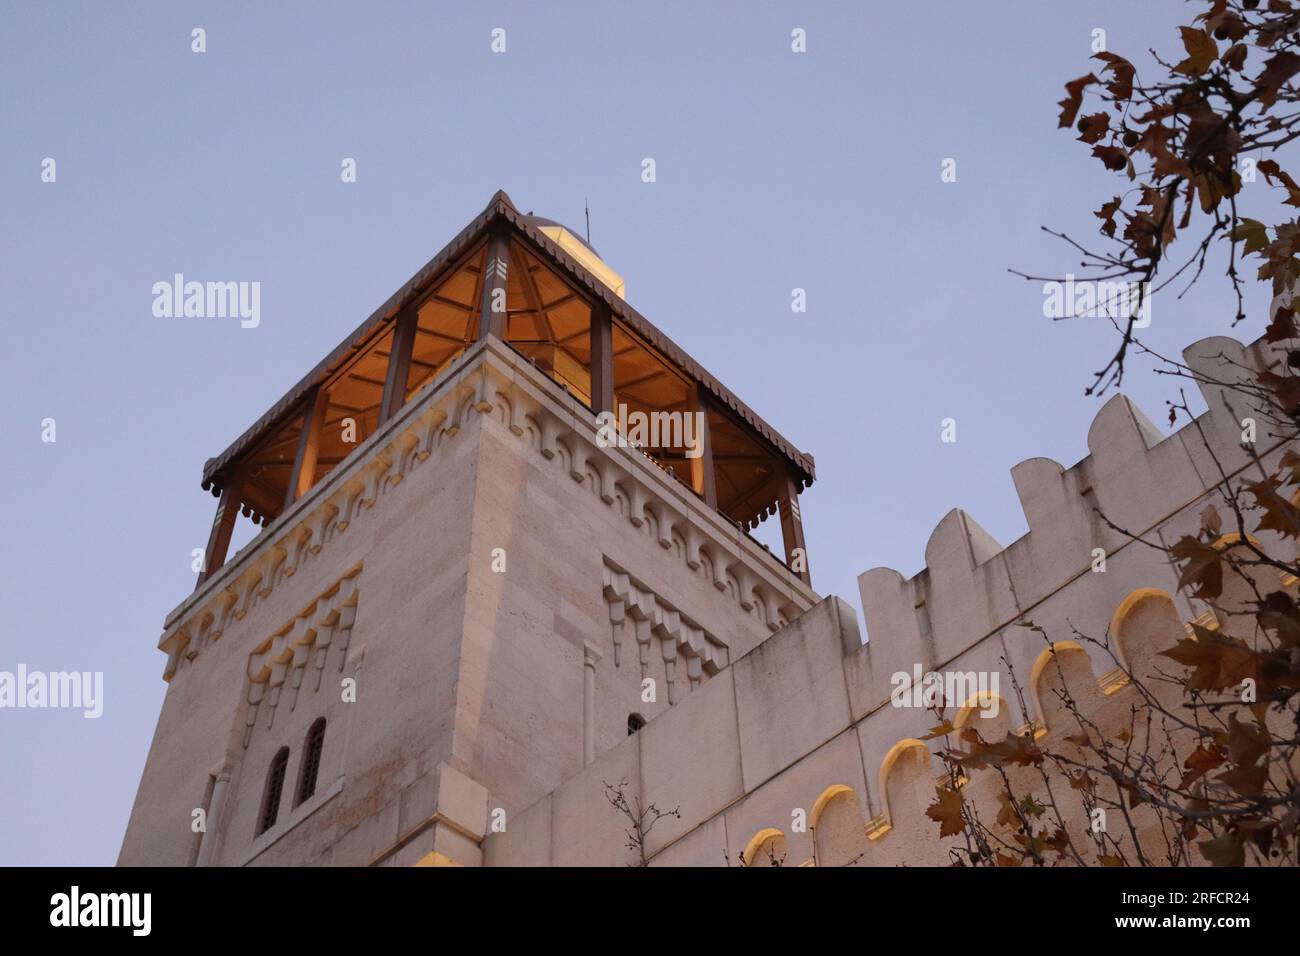 Amman, Jordanie : le plus beau minirat d'une mosquée (Mosquée du Roi Hussein Bin Talal) en automne Banque D'Images